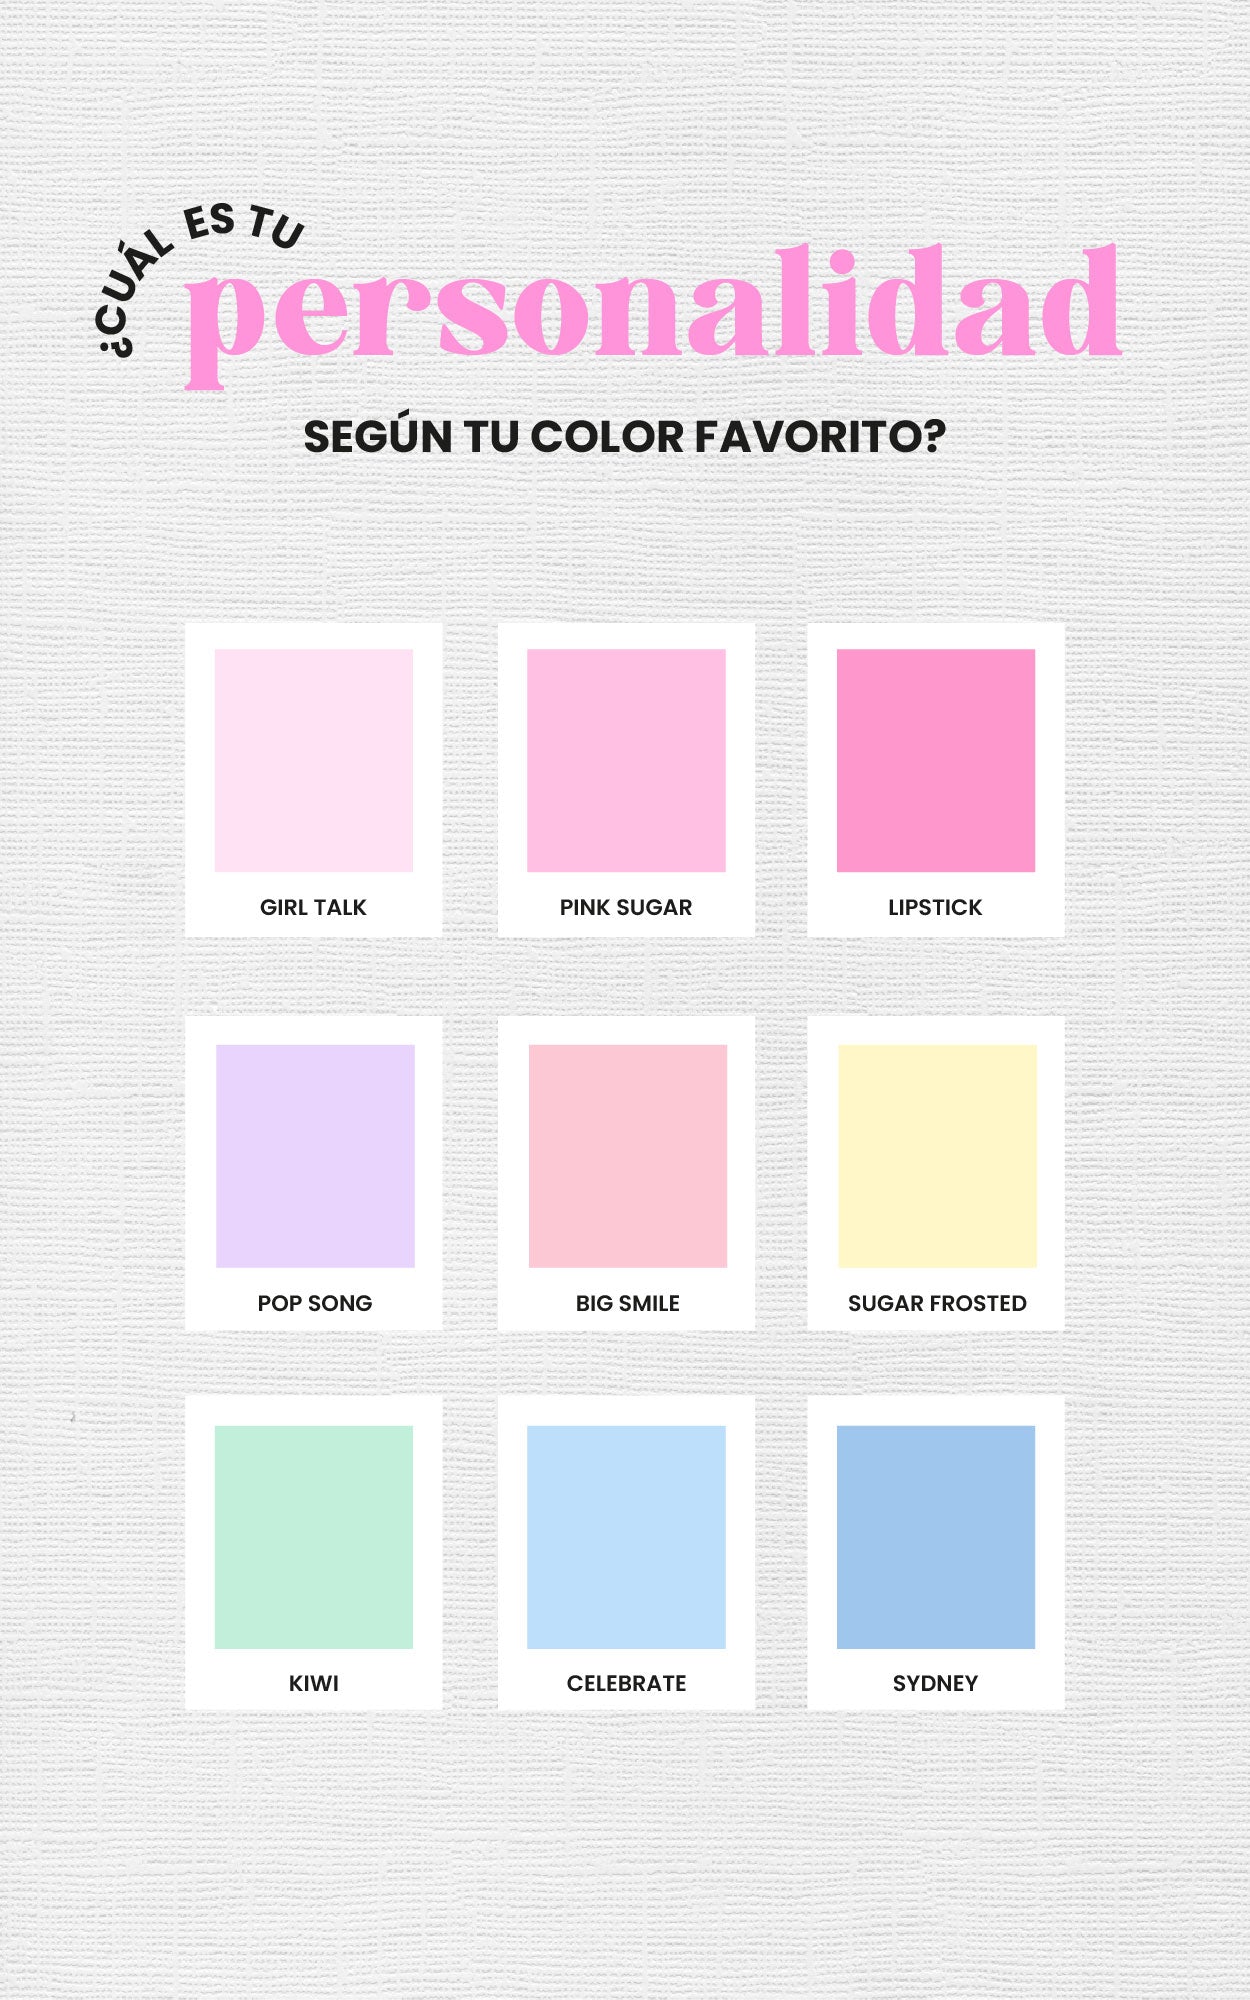 ¿Cómo es tu personalidad según tu color favorito?